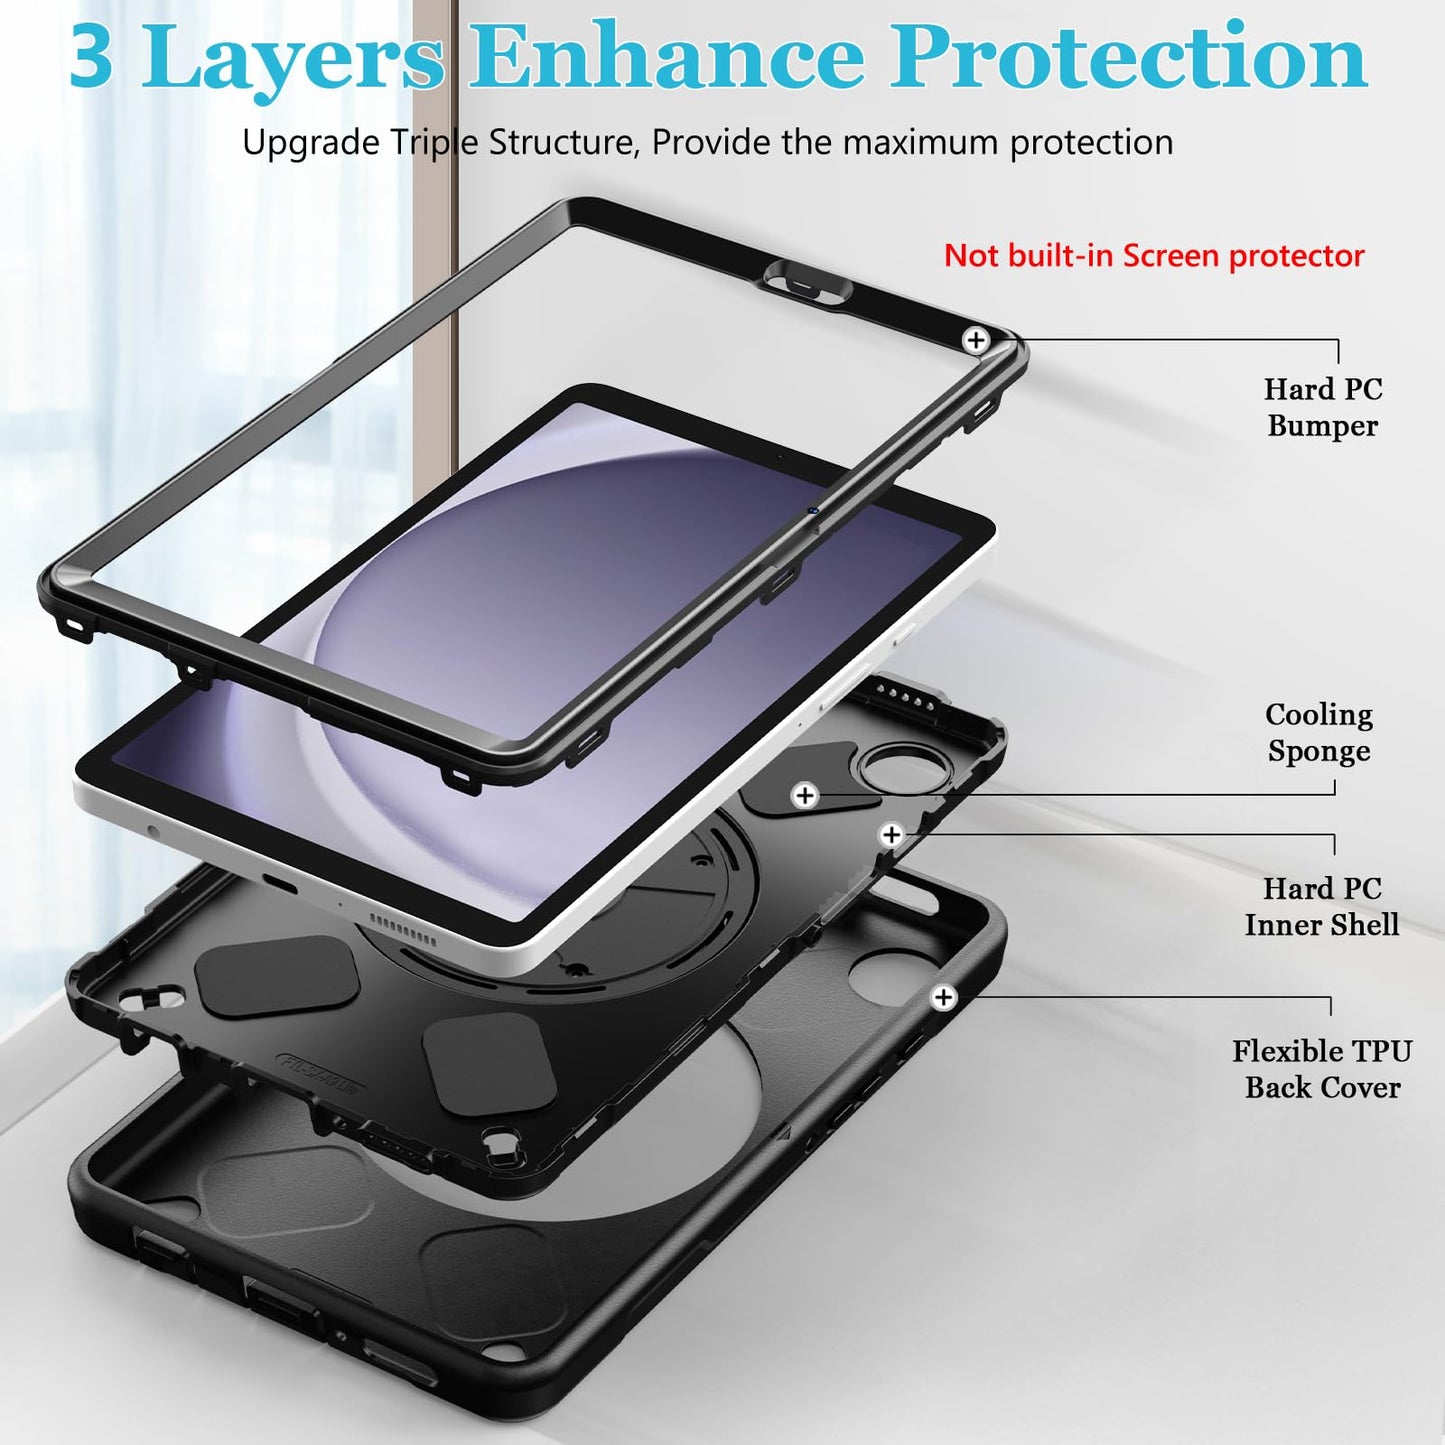 Case for Galaxy Tab A9 8.7 inch FTL